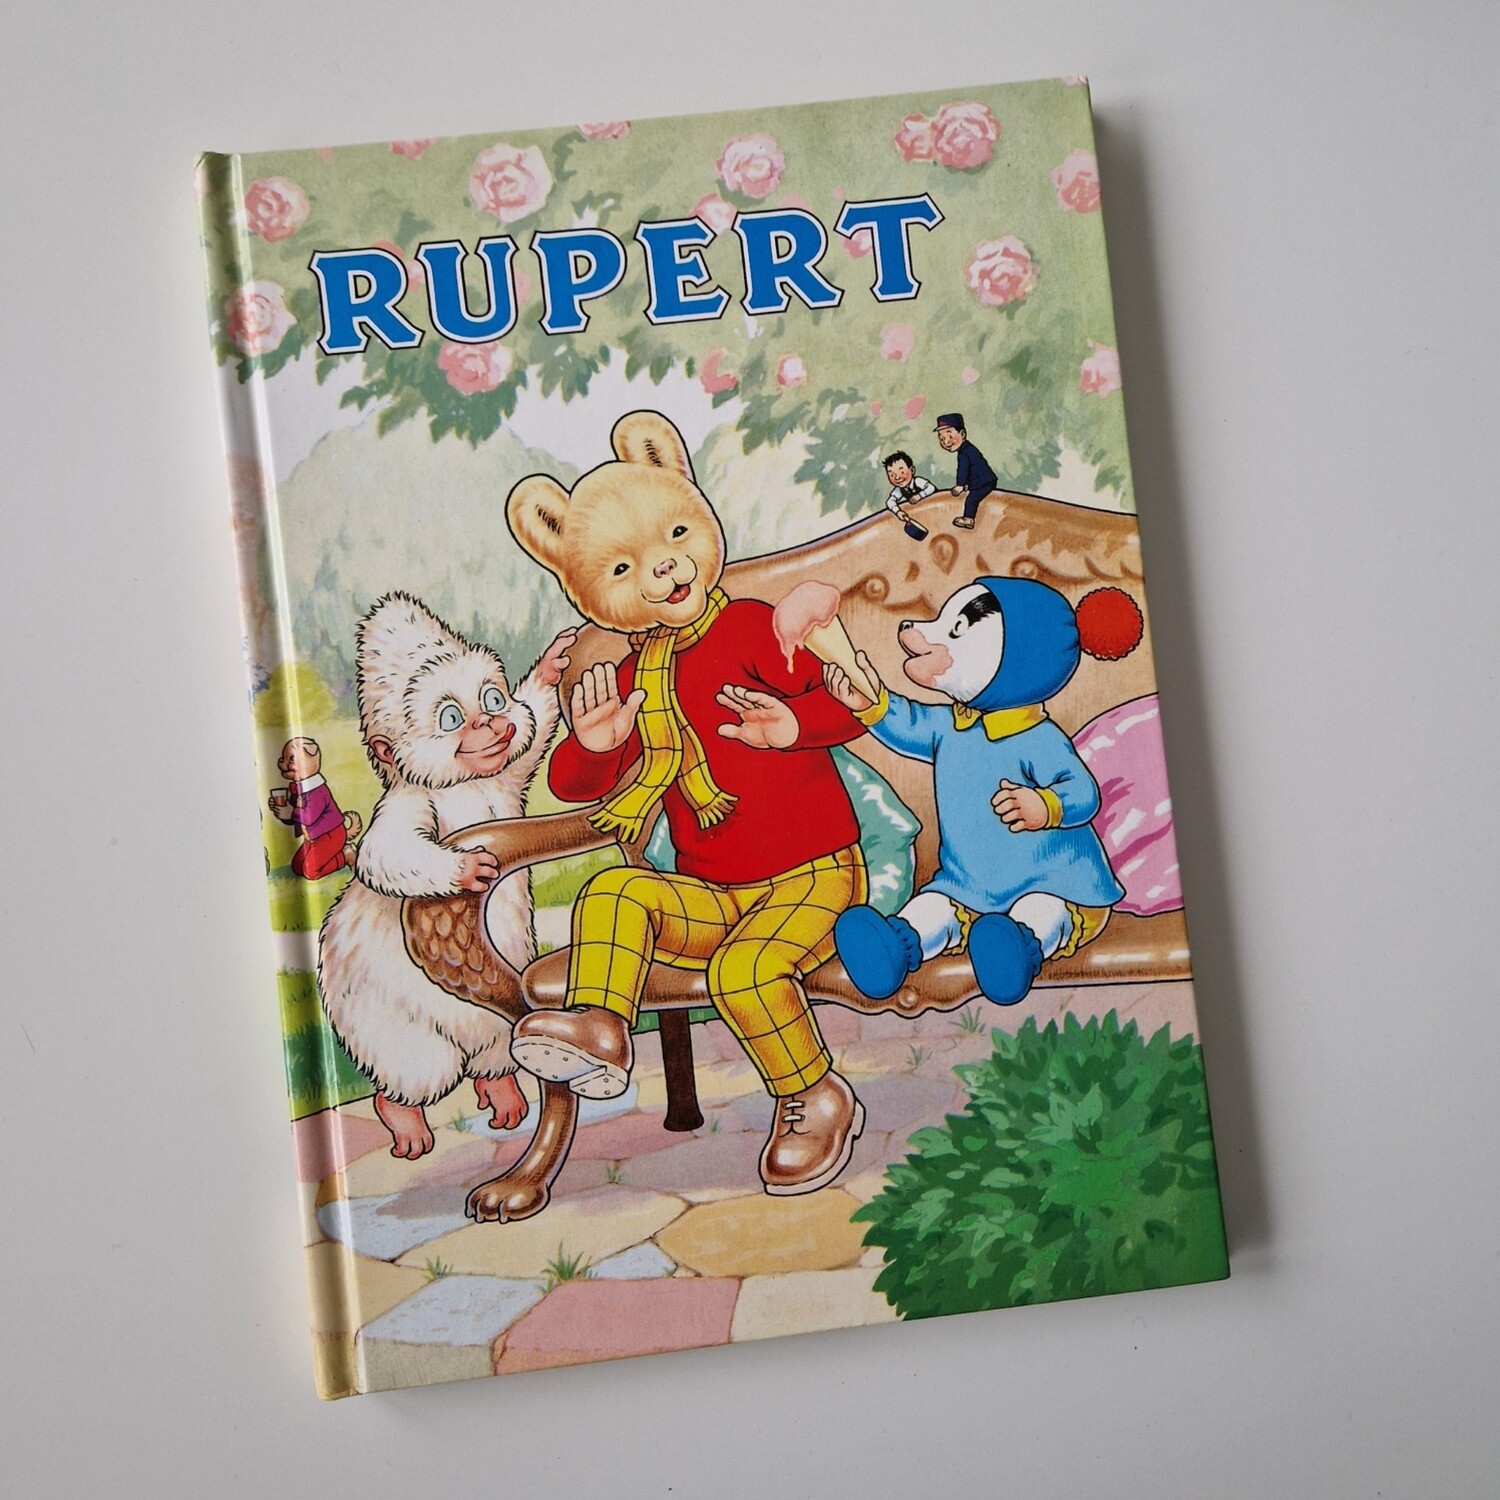 Rupert the Bear 1990, A4 size